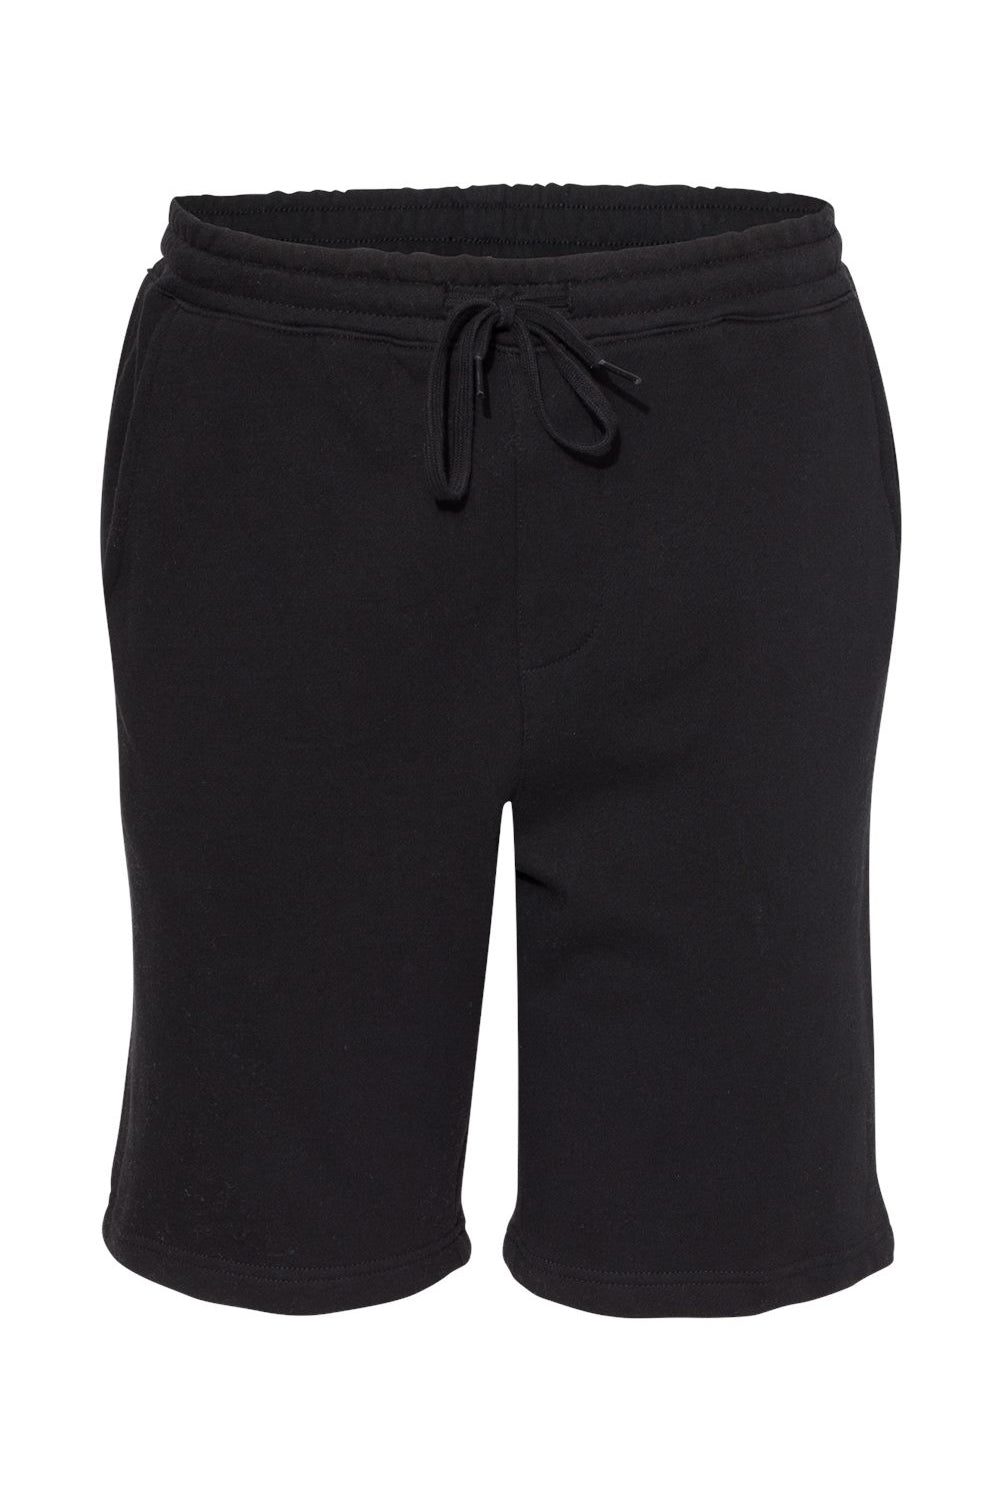 Independent Trading Co. IND20SRT Mens Fleece Shorts w/ Pockets Black Flat Front